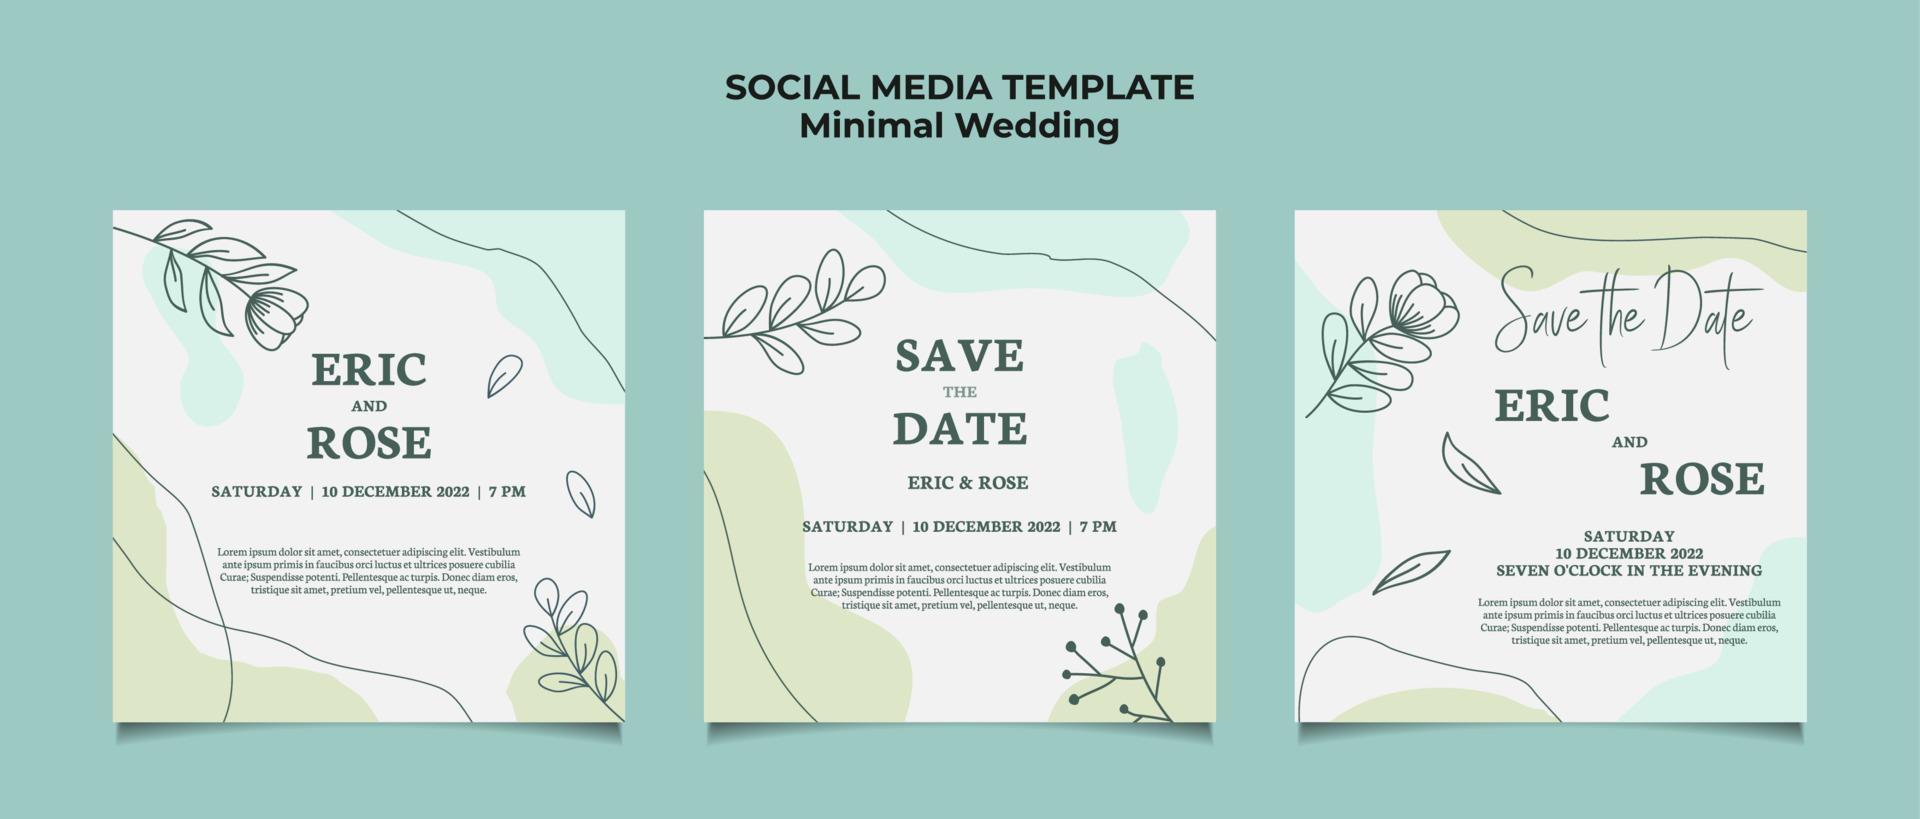 invitación de boda mínima plantilla de publicación en redes sociales con marco floral línea arte dibujado a mano hoja y flor vector